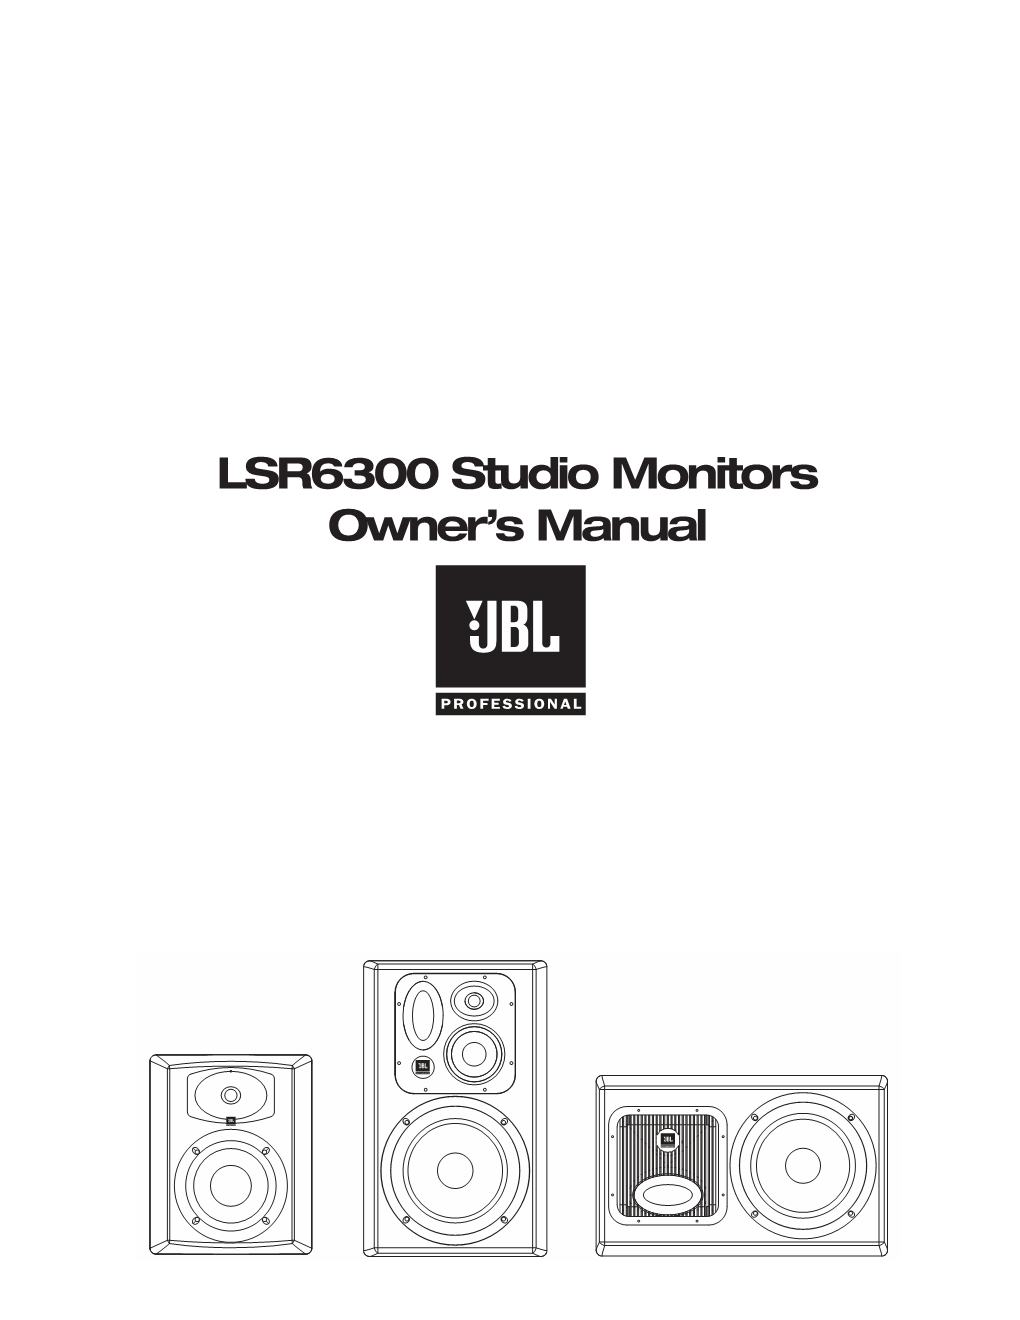 LSR6300 Studio Monitors Owner's Manual